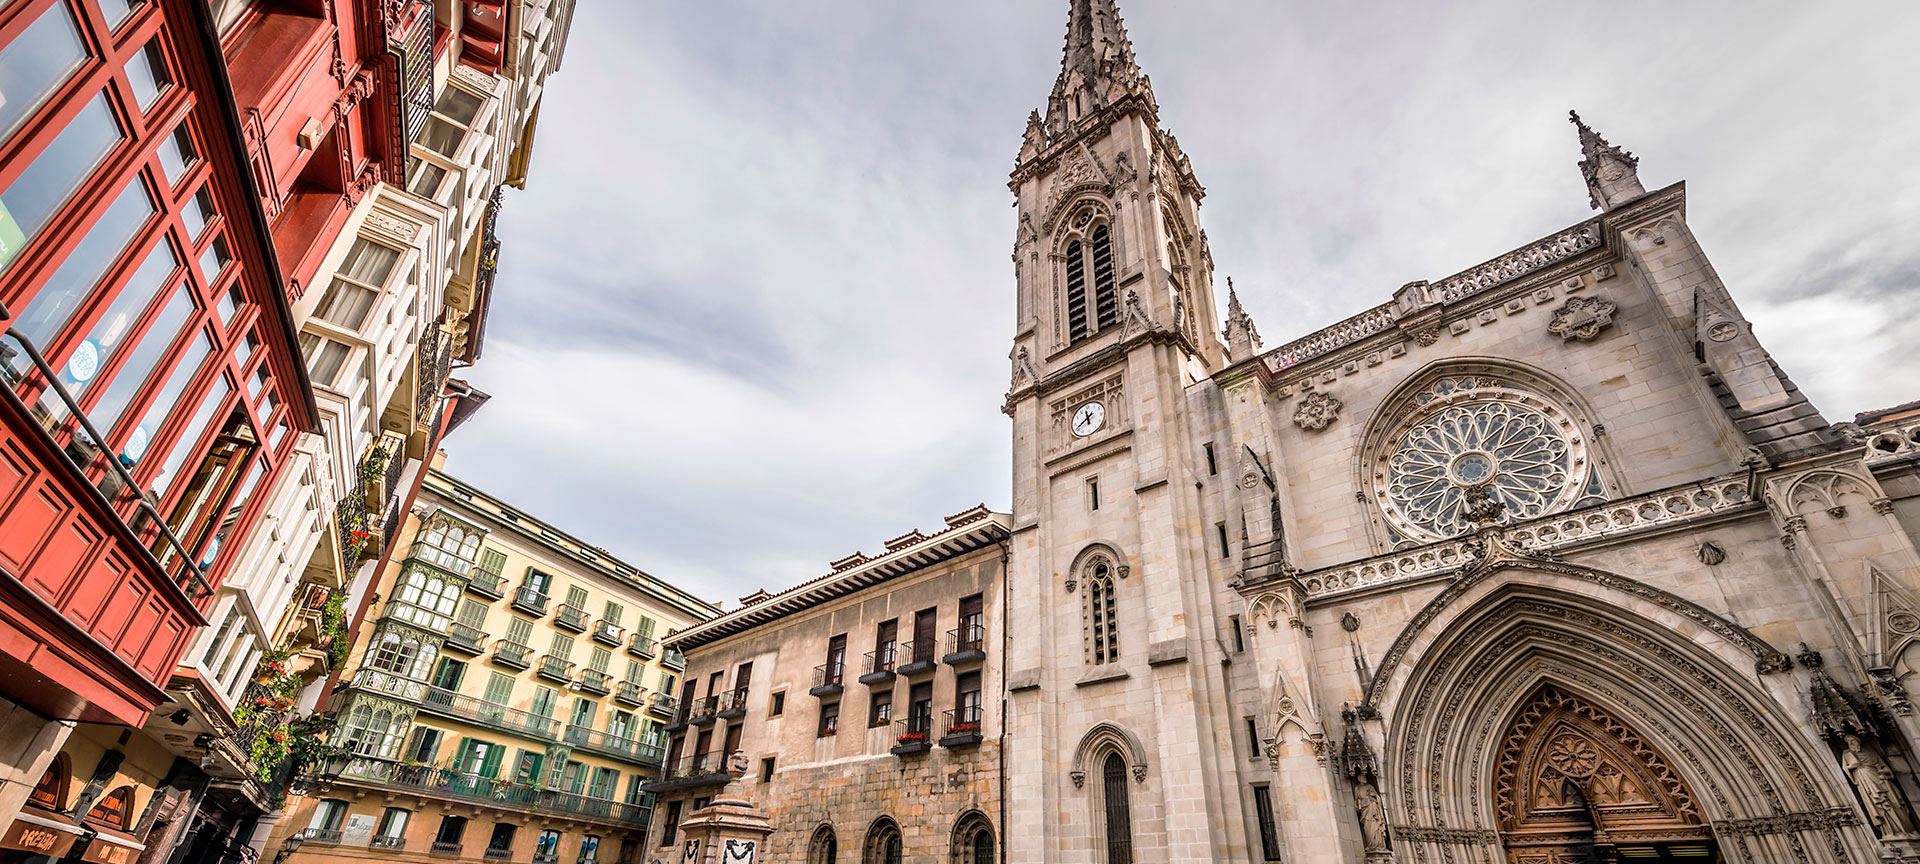 Cattedrale di Santiago. a Bilbao | spain.info